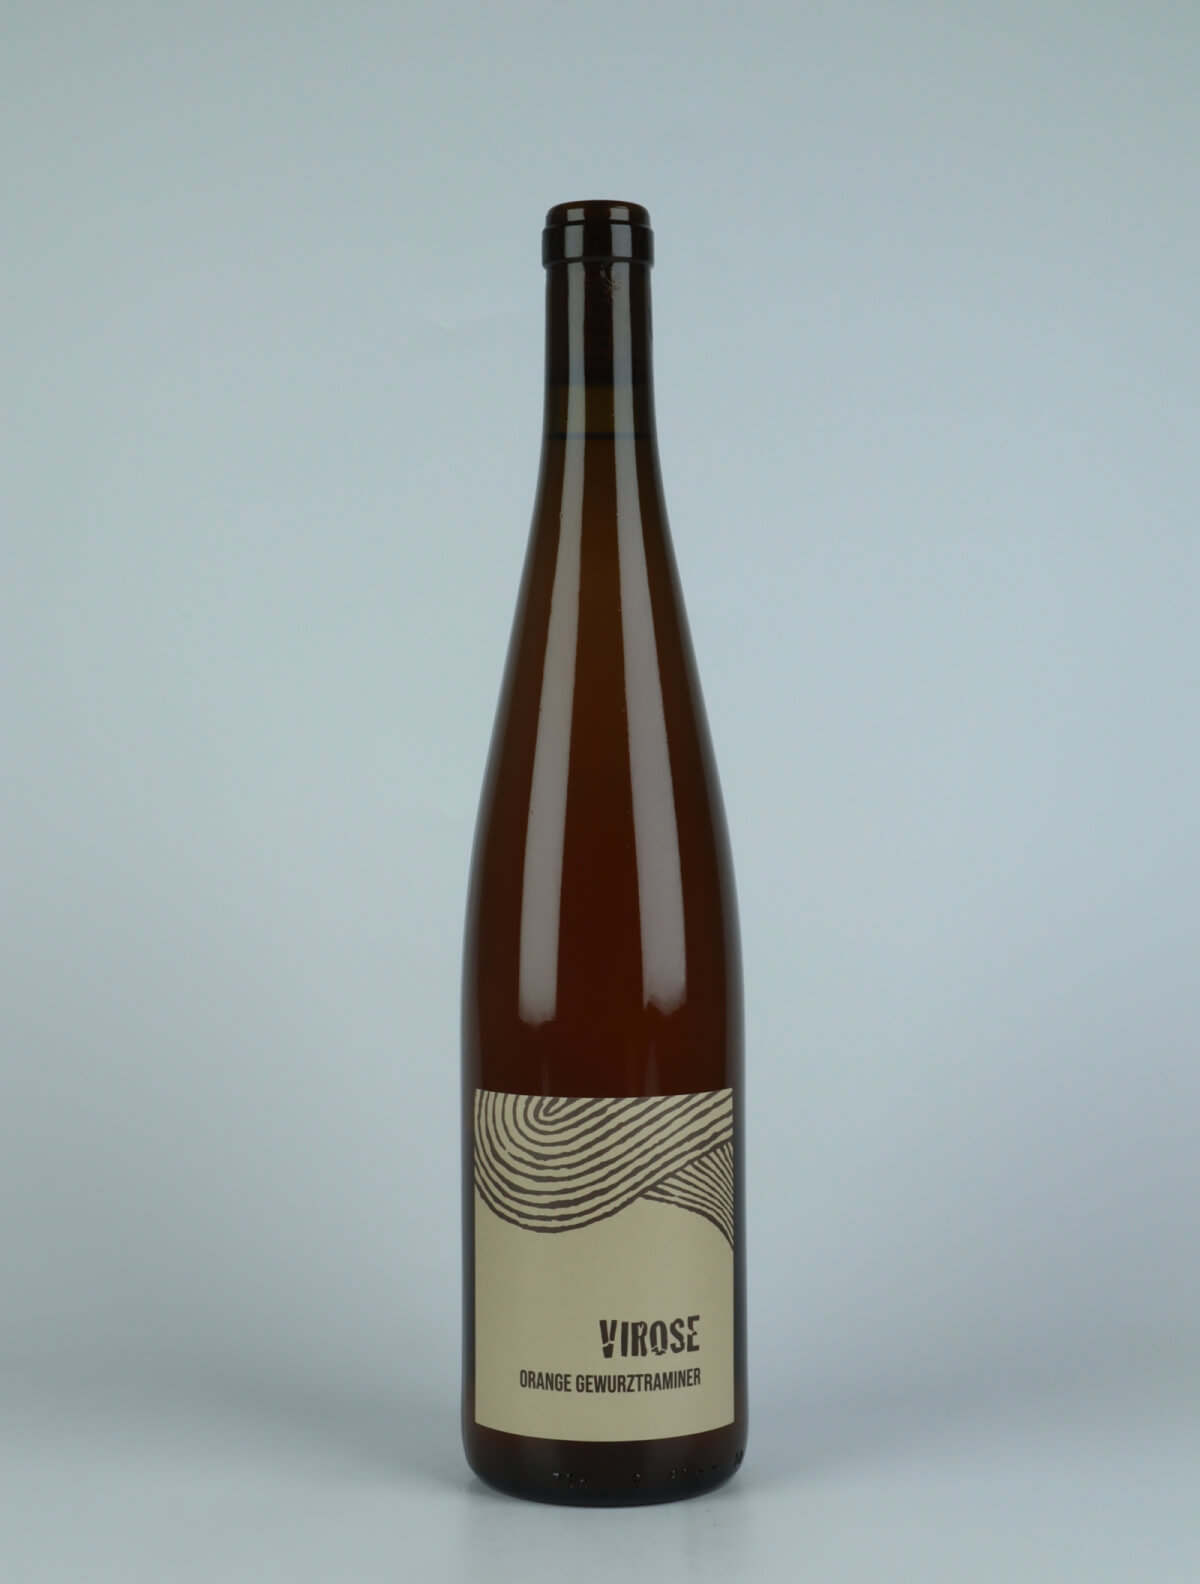 En flaske 2021 Virose Orange vin fra Ruhlmann Dirringer, Alsace i Frankrig